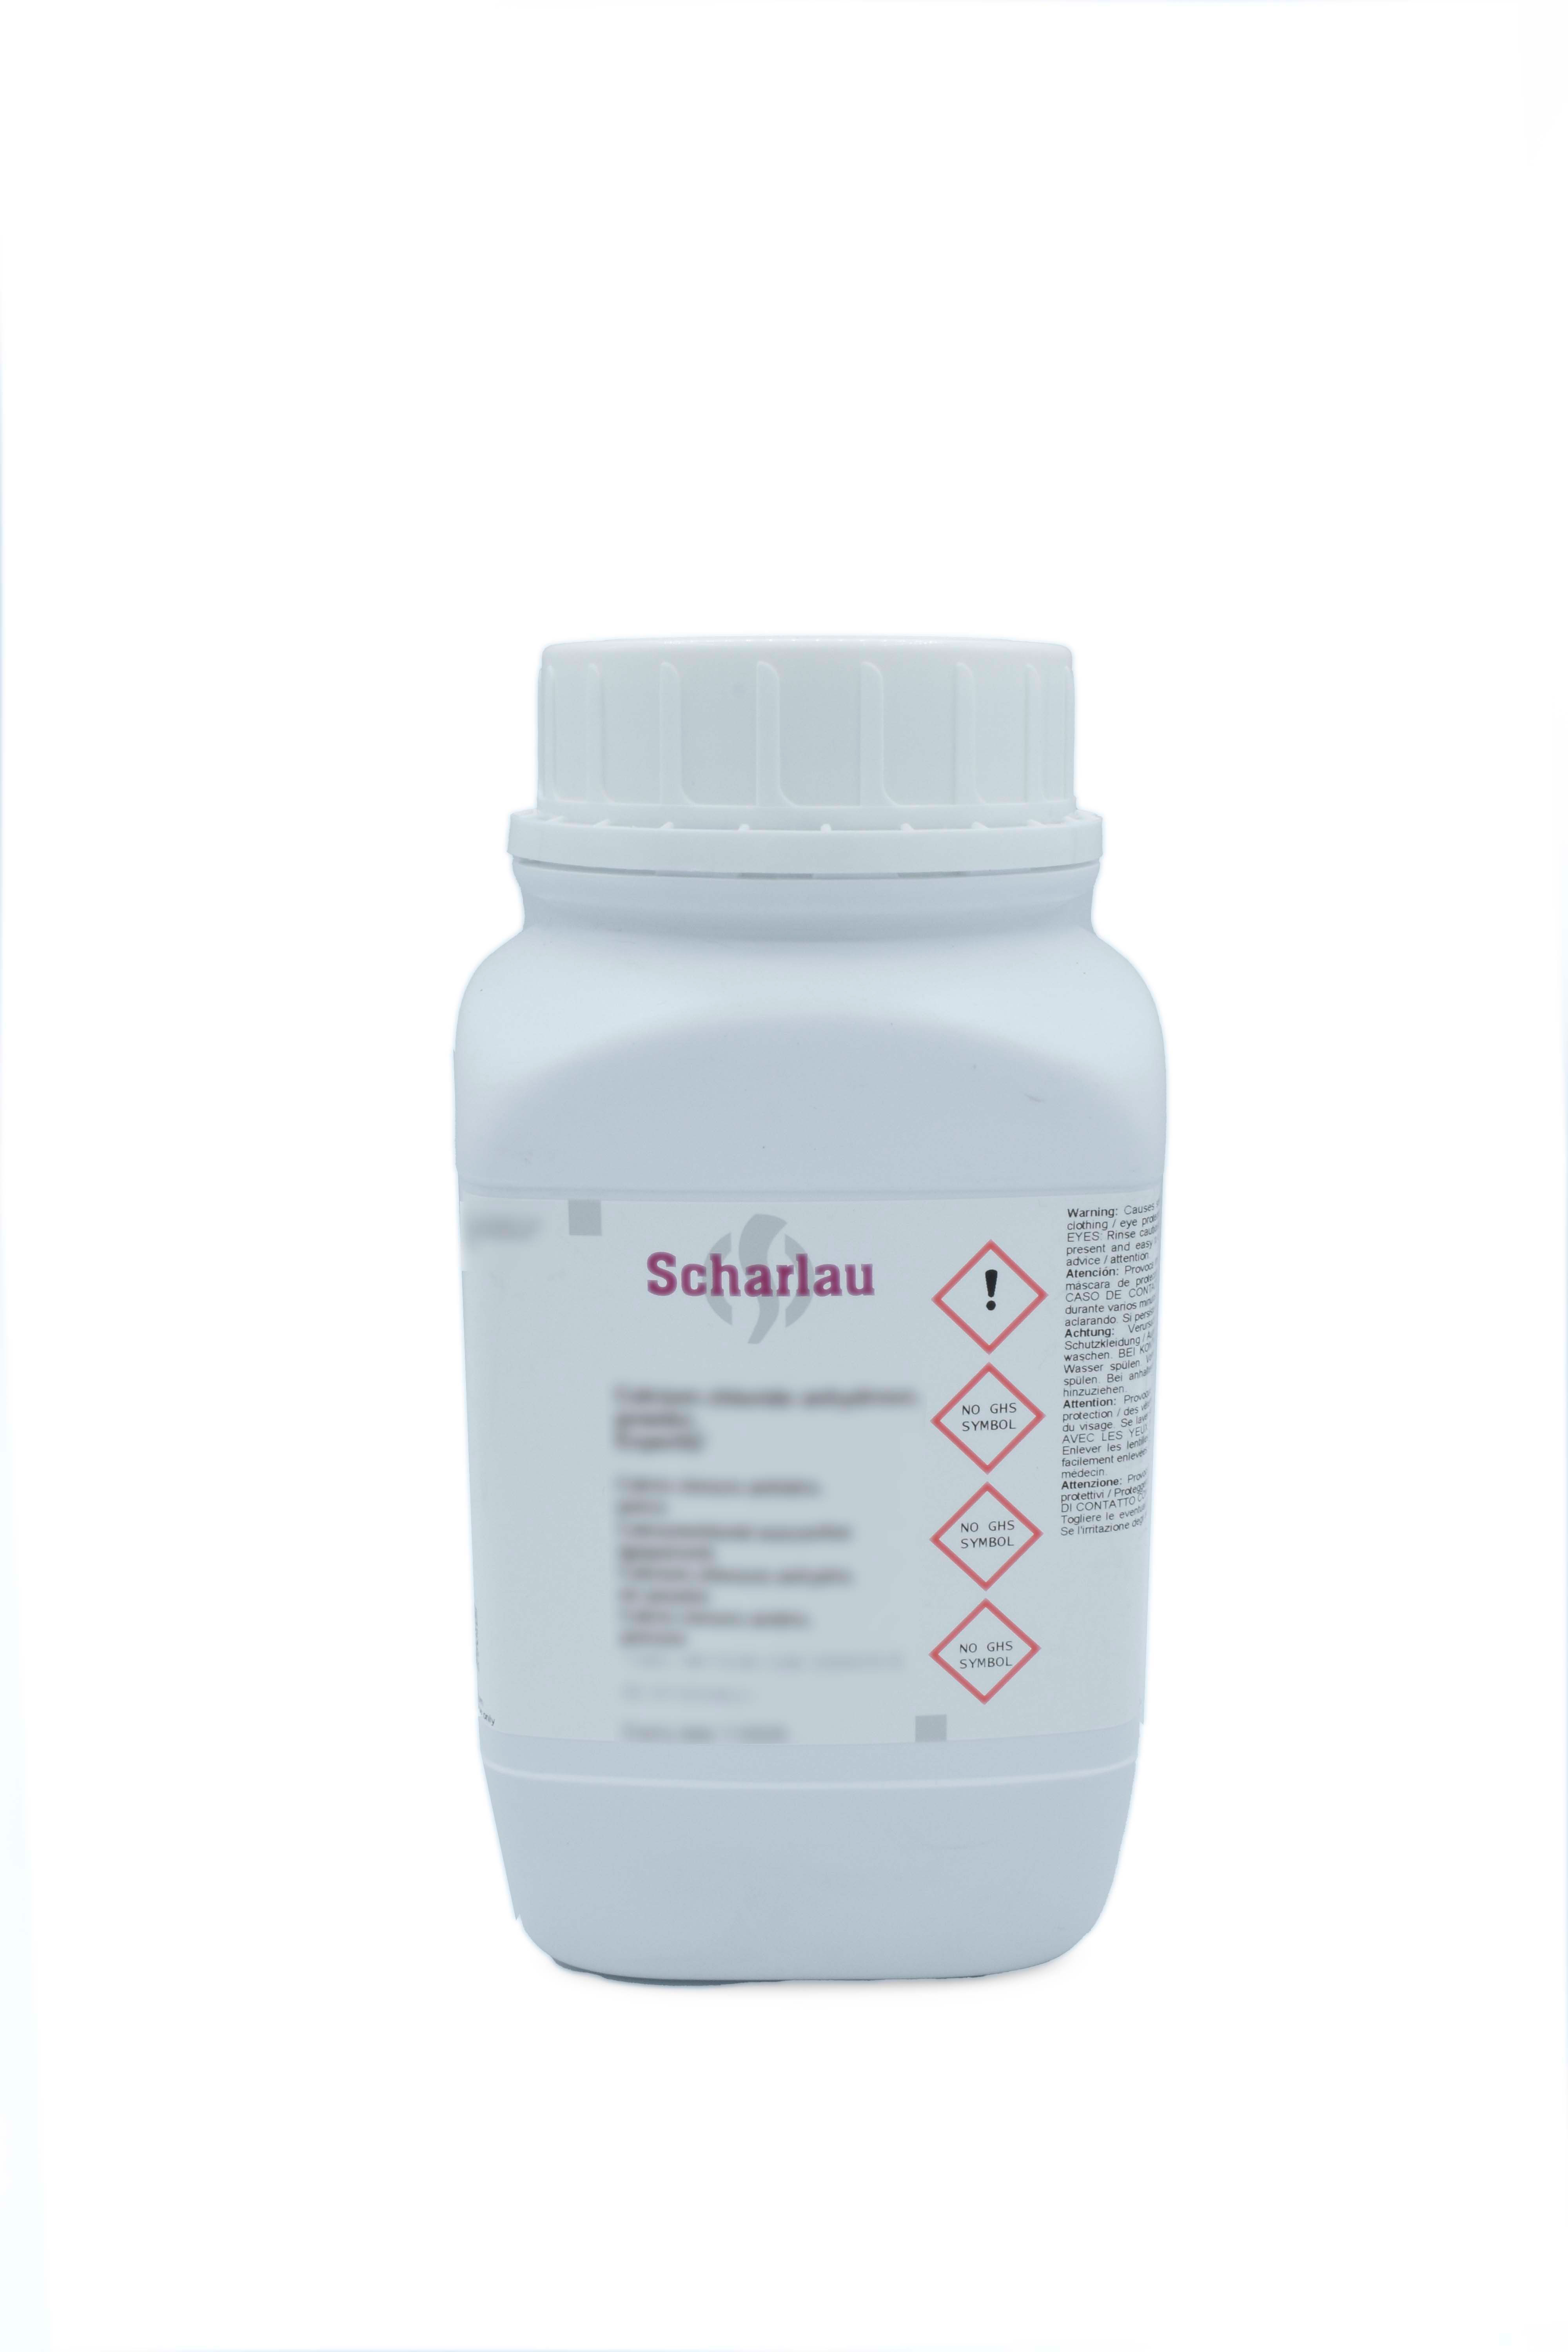 Parafina plastificada, pastillas, punto de fusión 52 - 54 °C